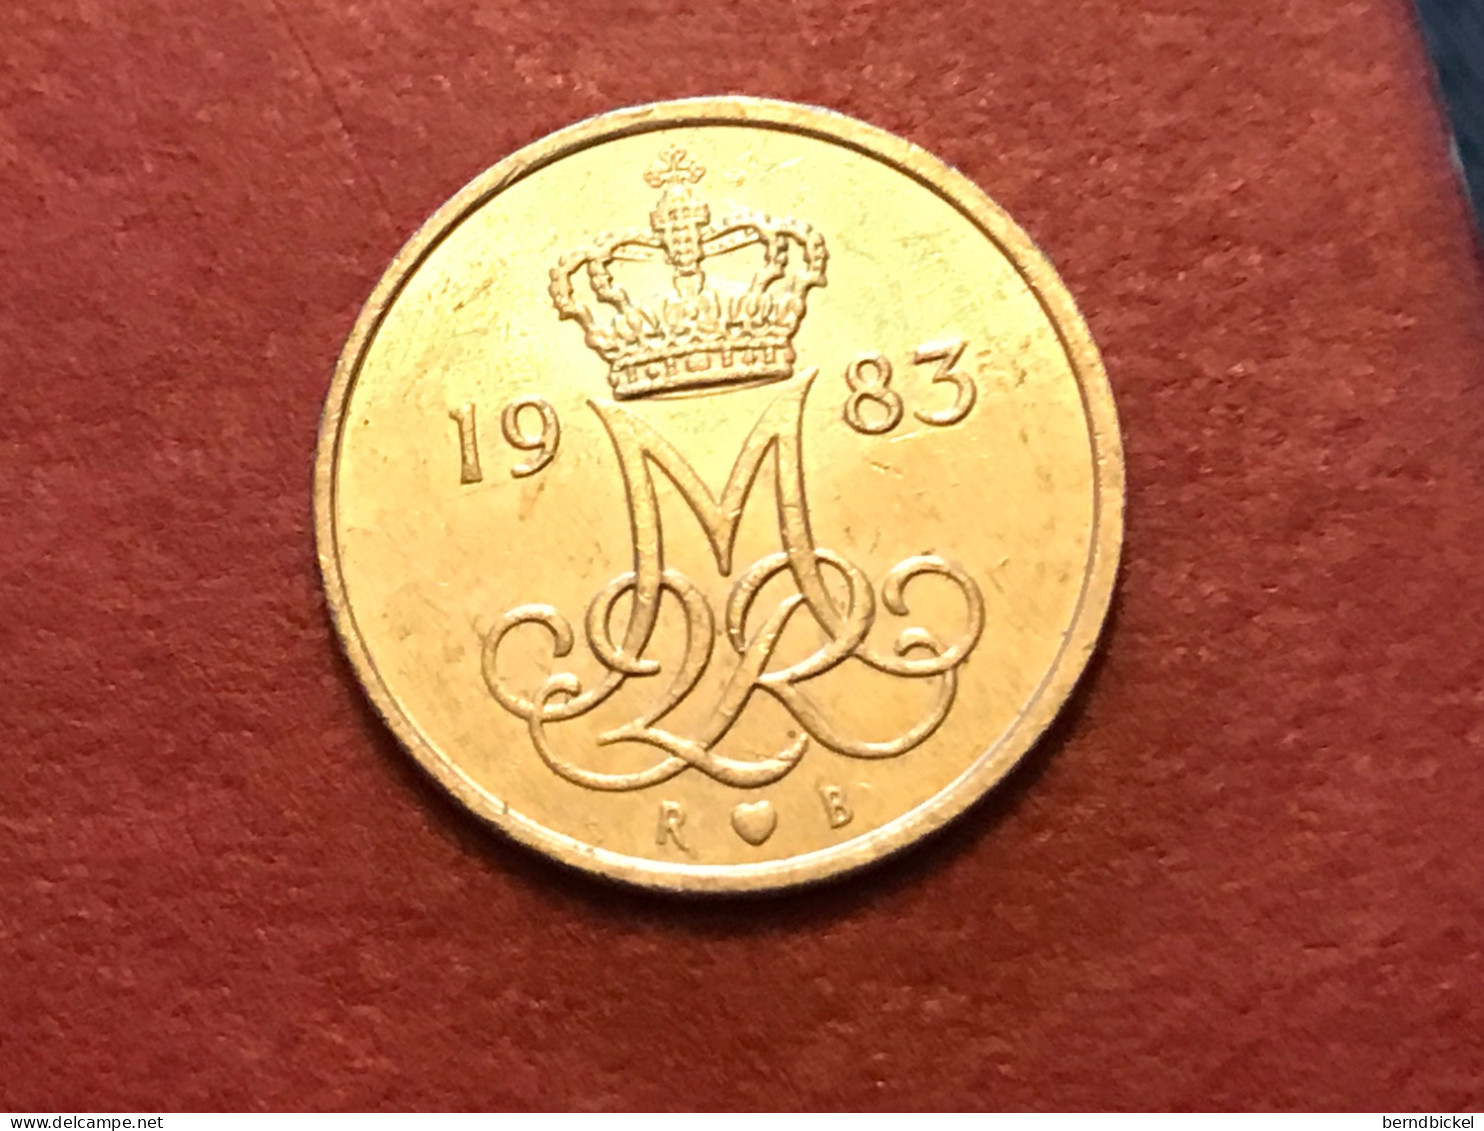 Münze Münzen Umlaufmünze Dänemark 10 Öre 1983 - Danemark